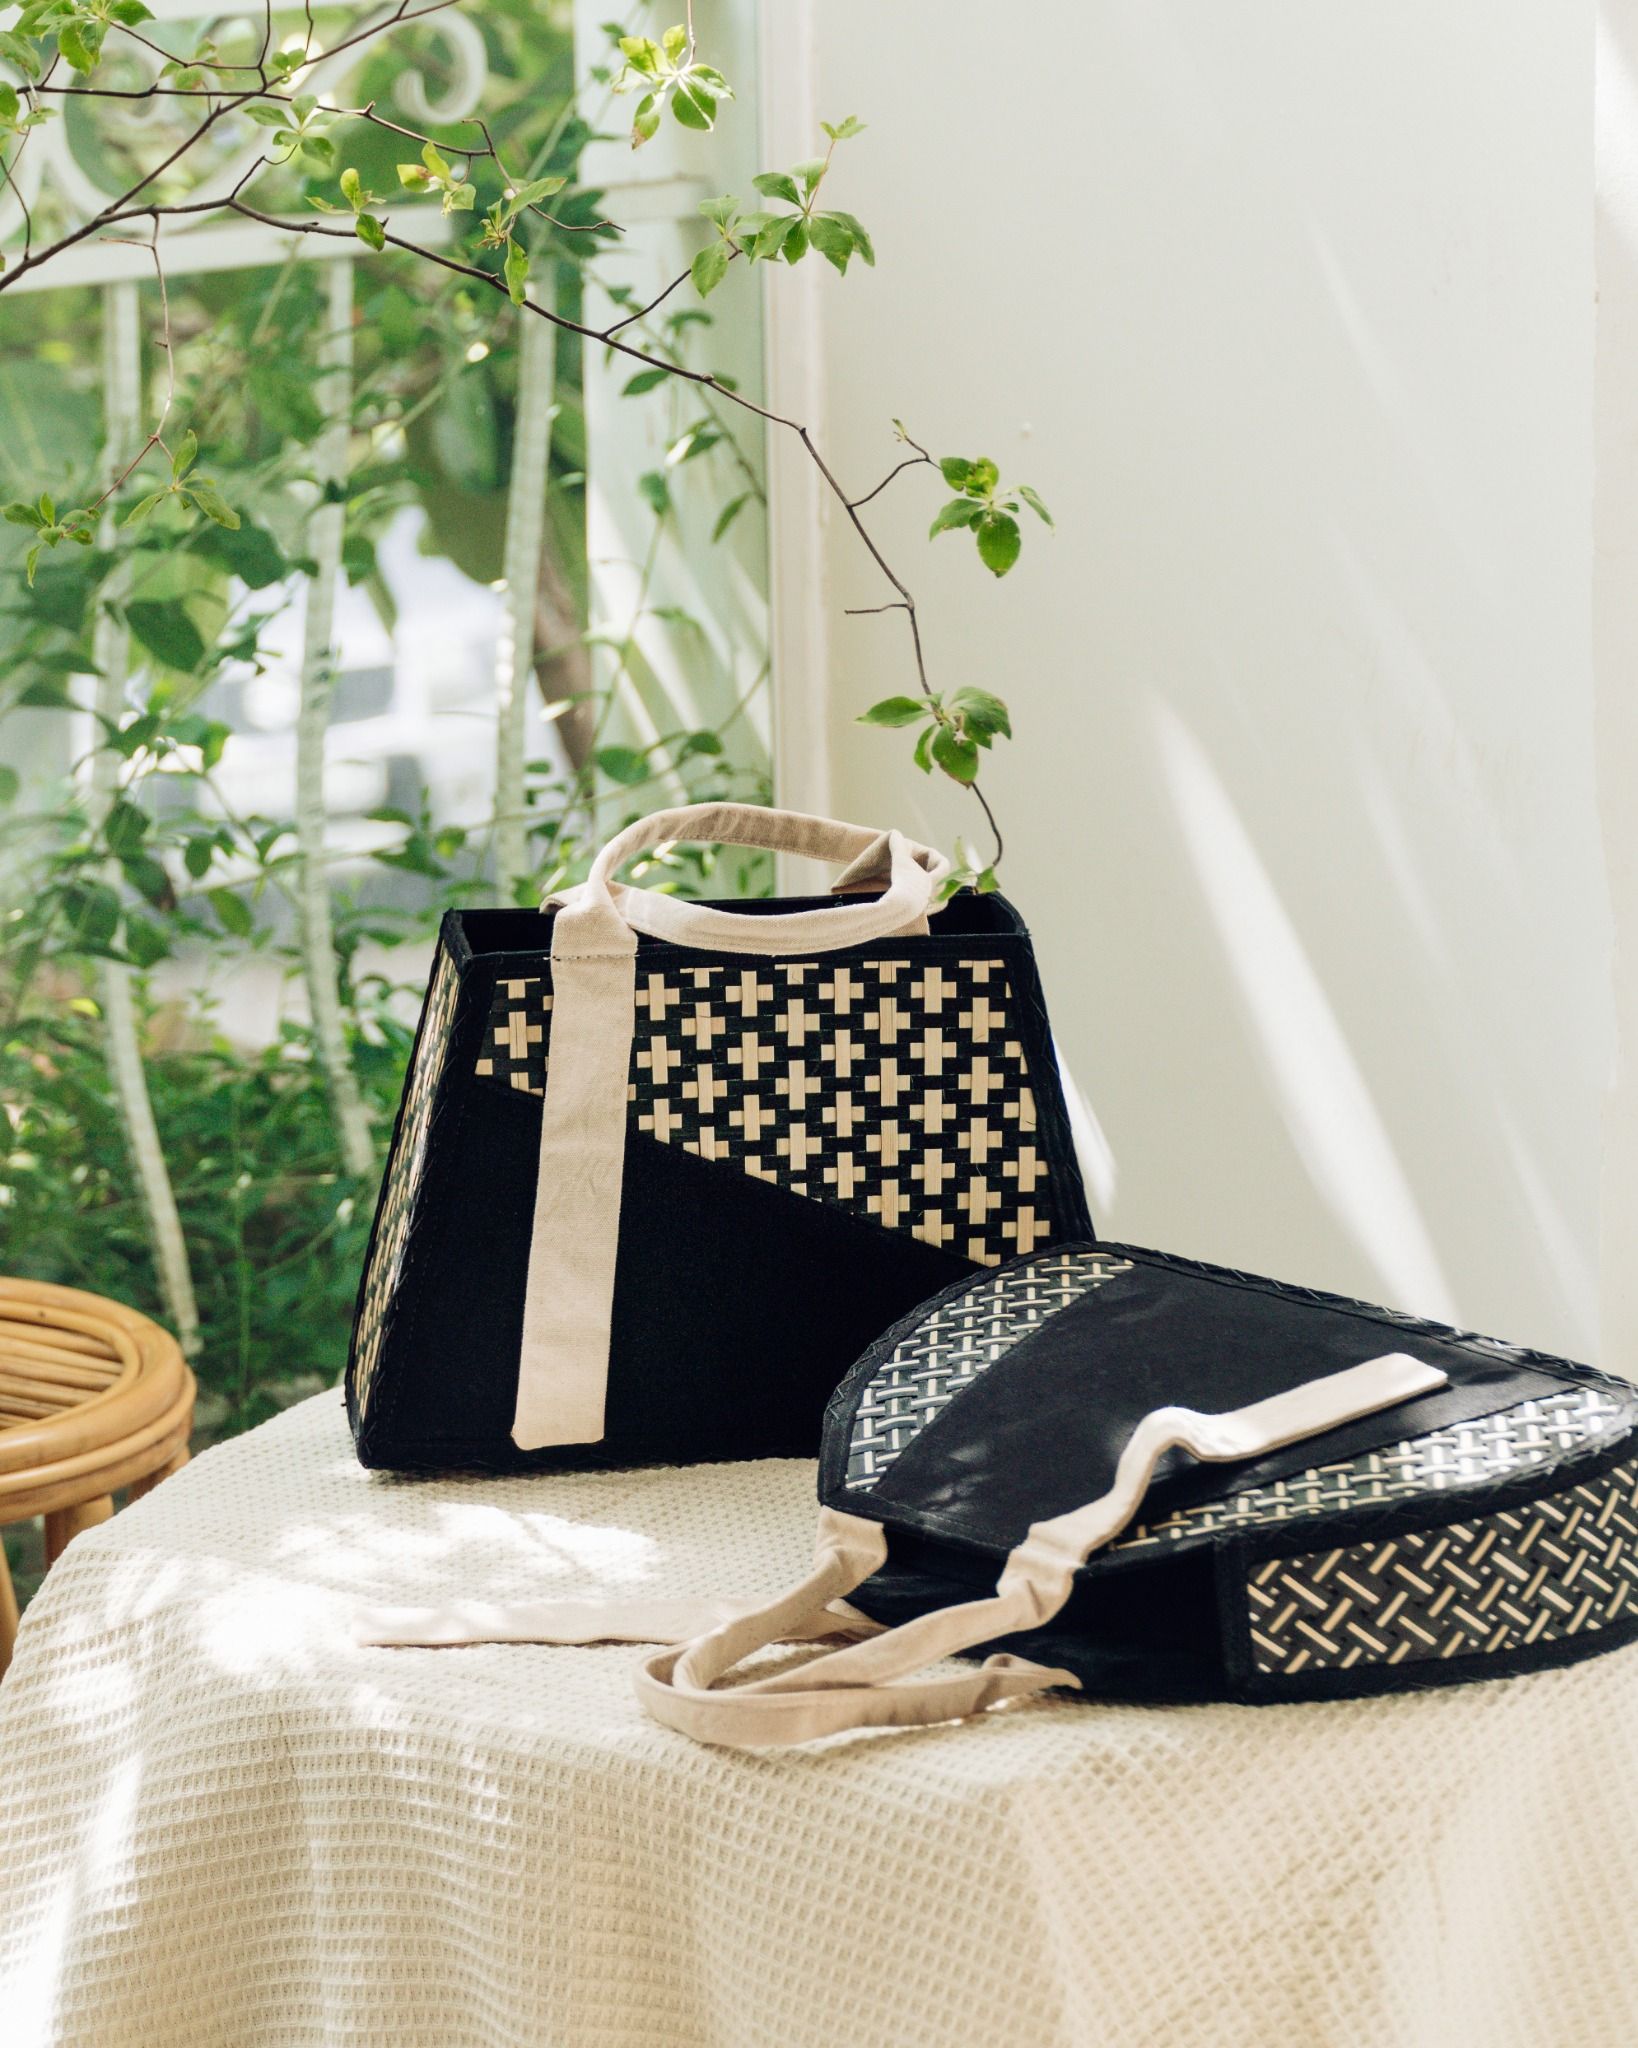  Túi vải họa tiết tre đan thủ công quai cầm bằng vải kiểu dáng thanh lịch trang nhã - Mã sản phẩm HB02 